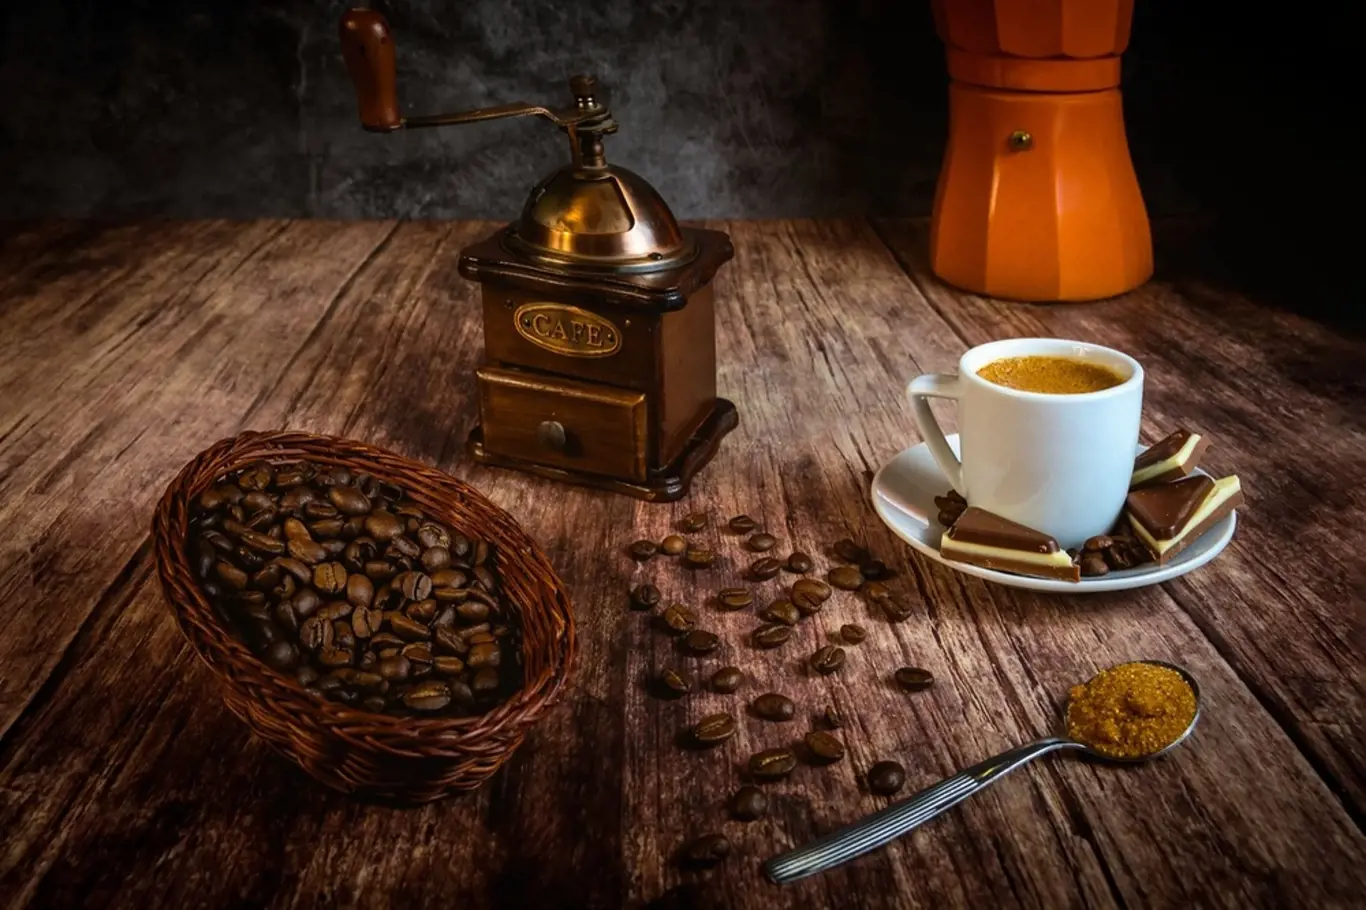 Přemýšleli jste někdy o tom, jakou roli hraje ve vašem životě káva?